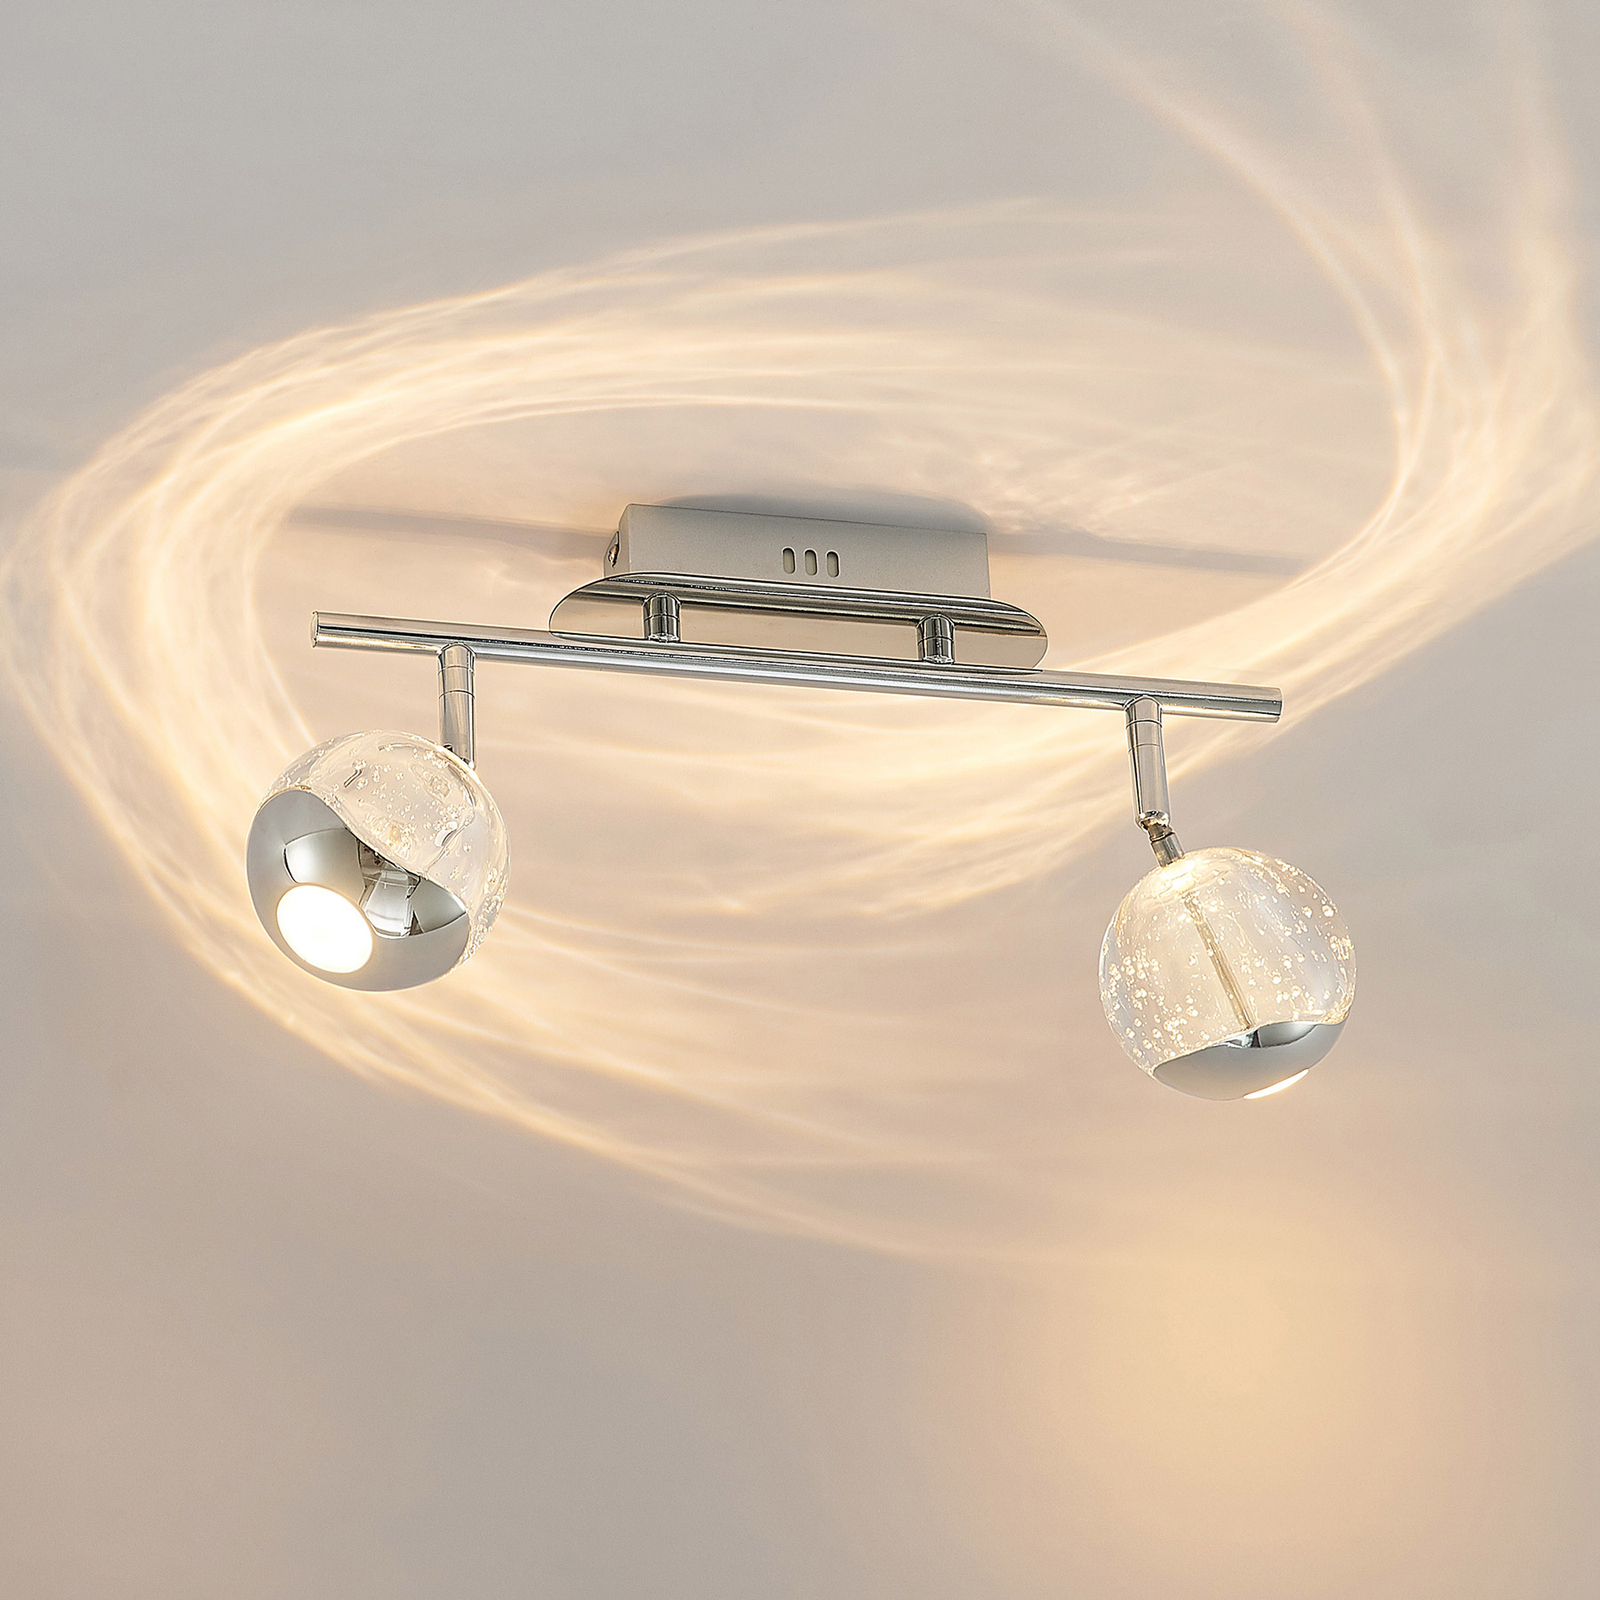 Lucande Kilio spot plafond LED, à 2 lampes, chromé